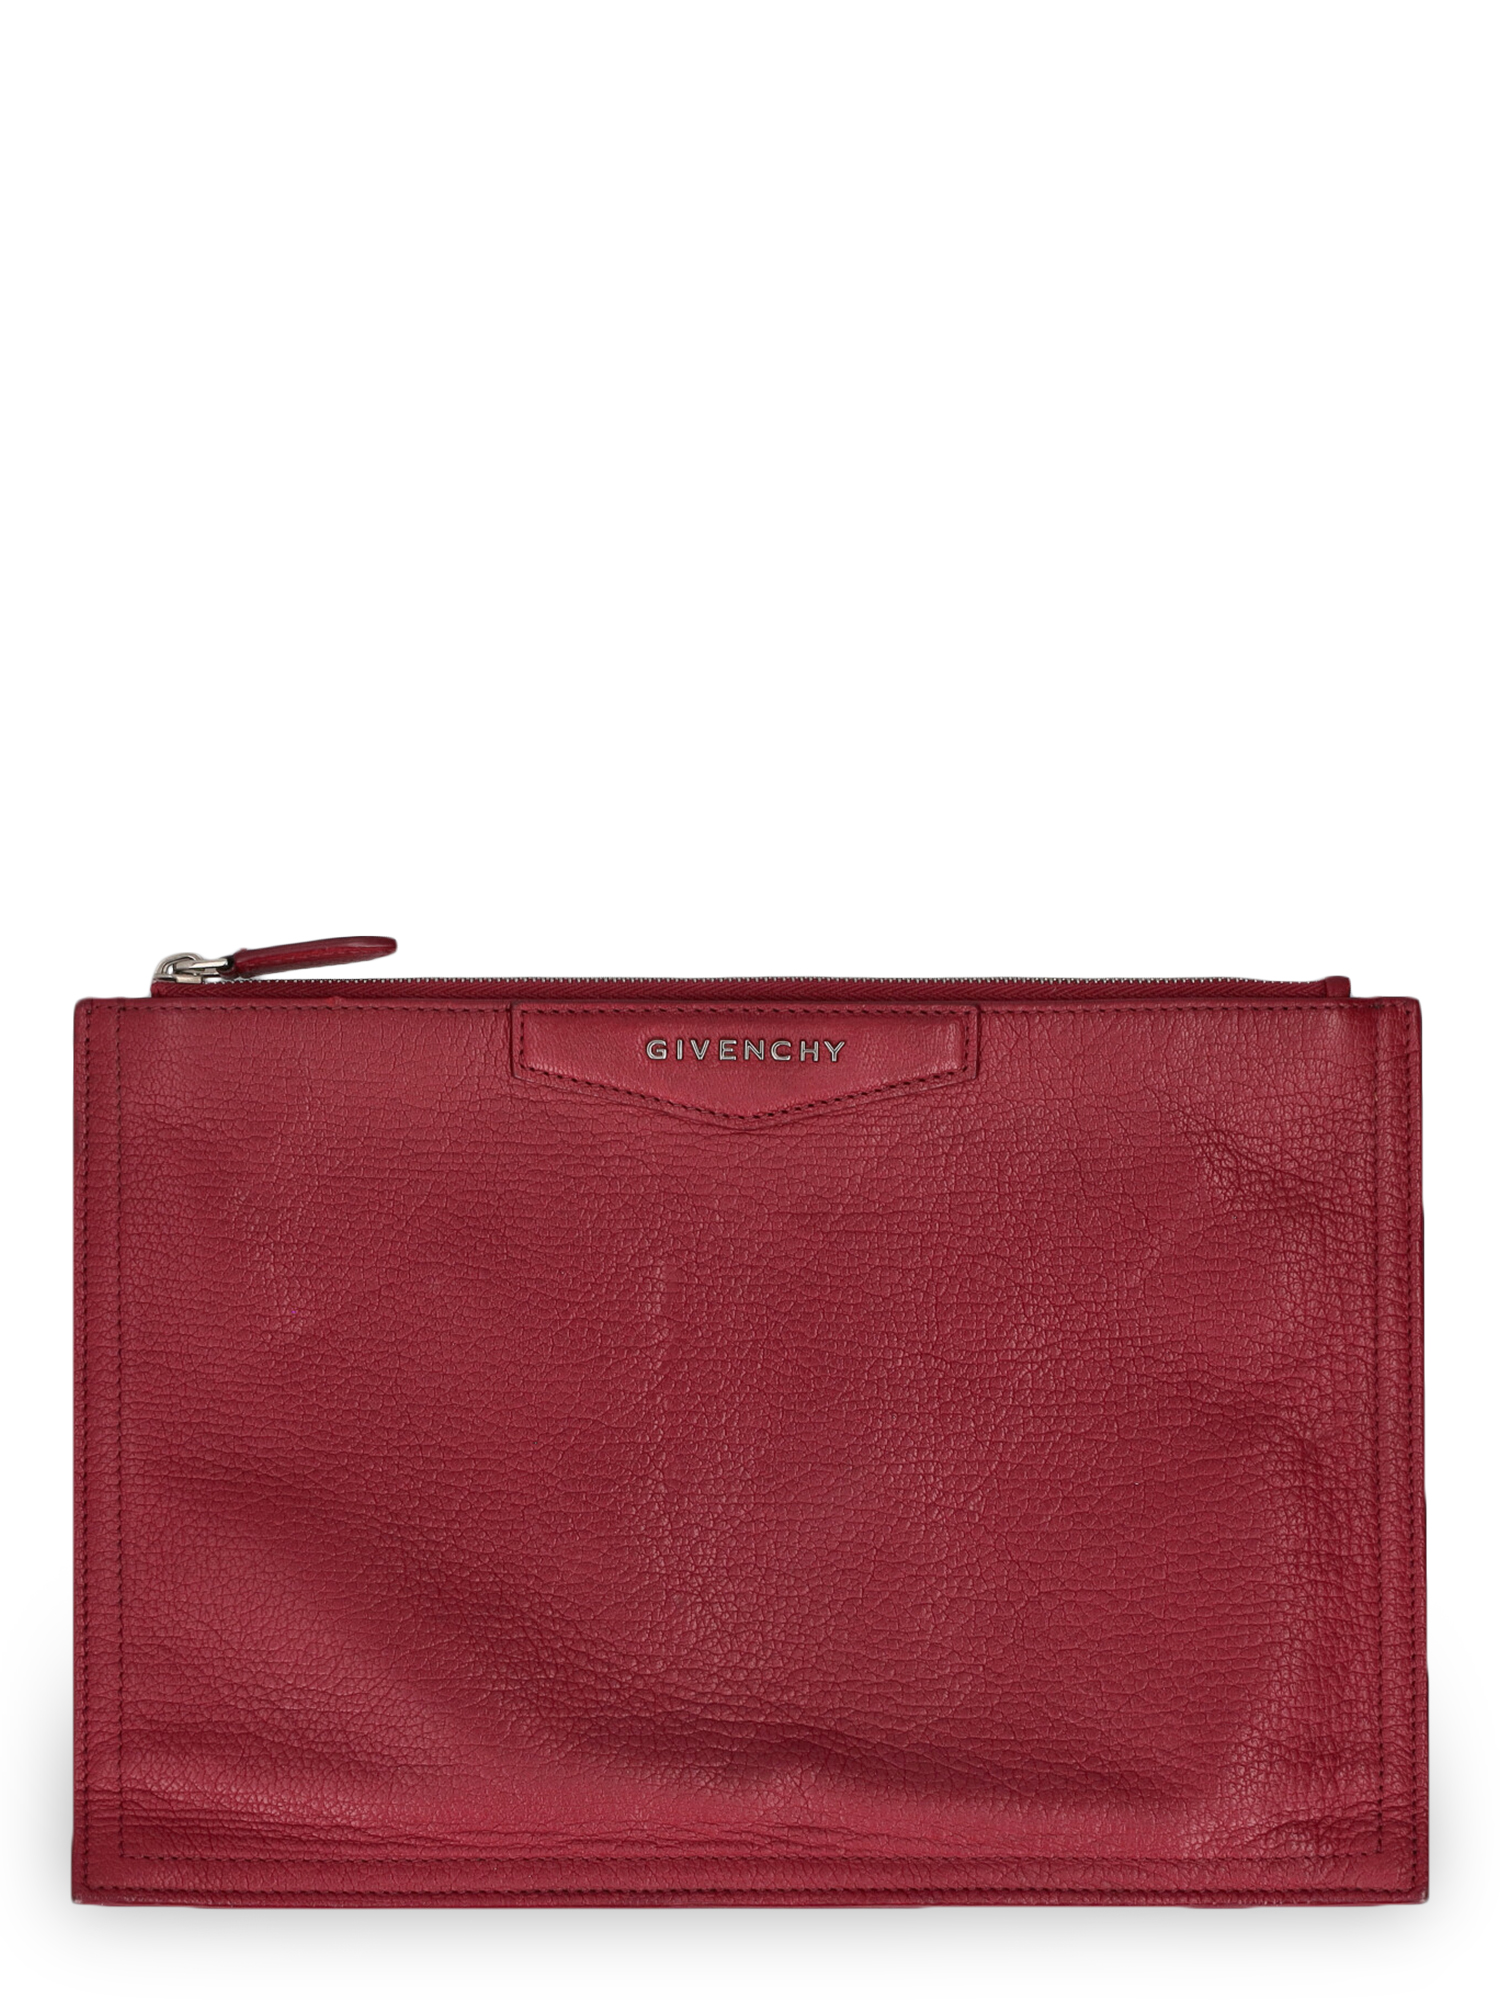 Sacs À Main Pour Femme - Givenchy - En Leather Red - Taille:  -